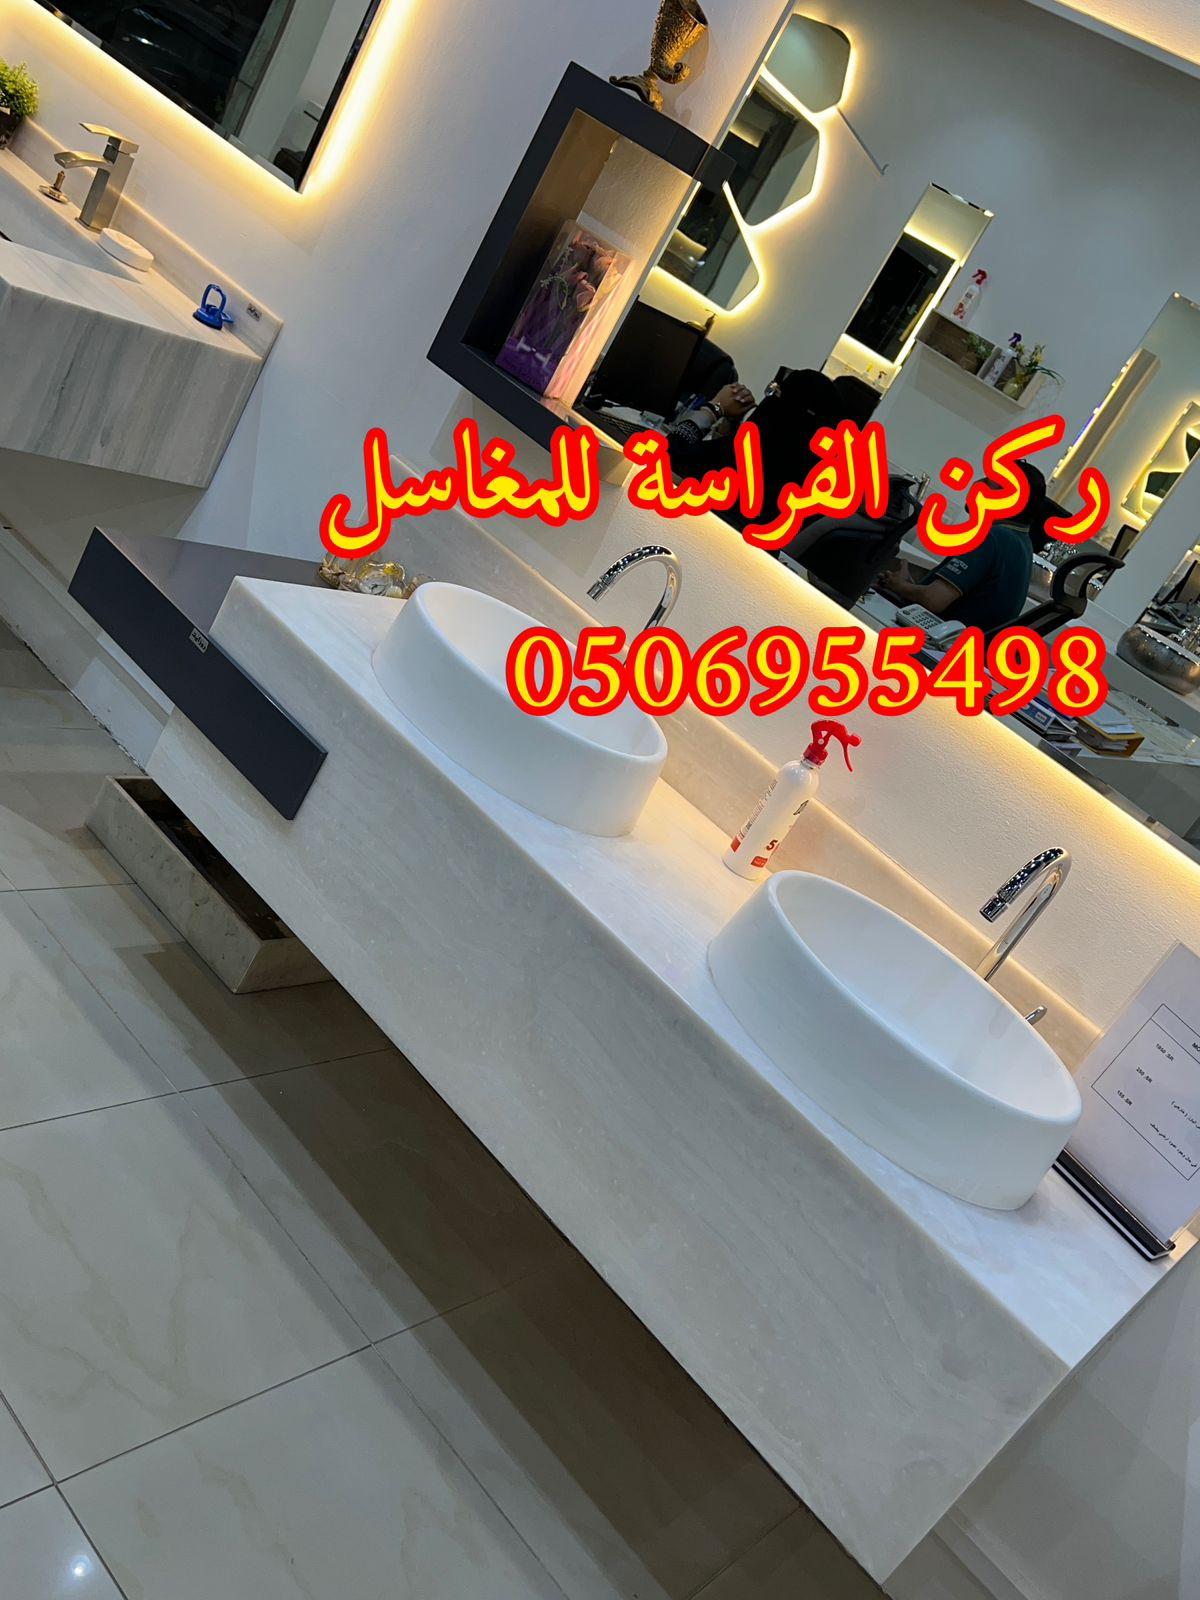 ديكورات مغاسل حمامات رخام في الرياض,0506955498 561259266